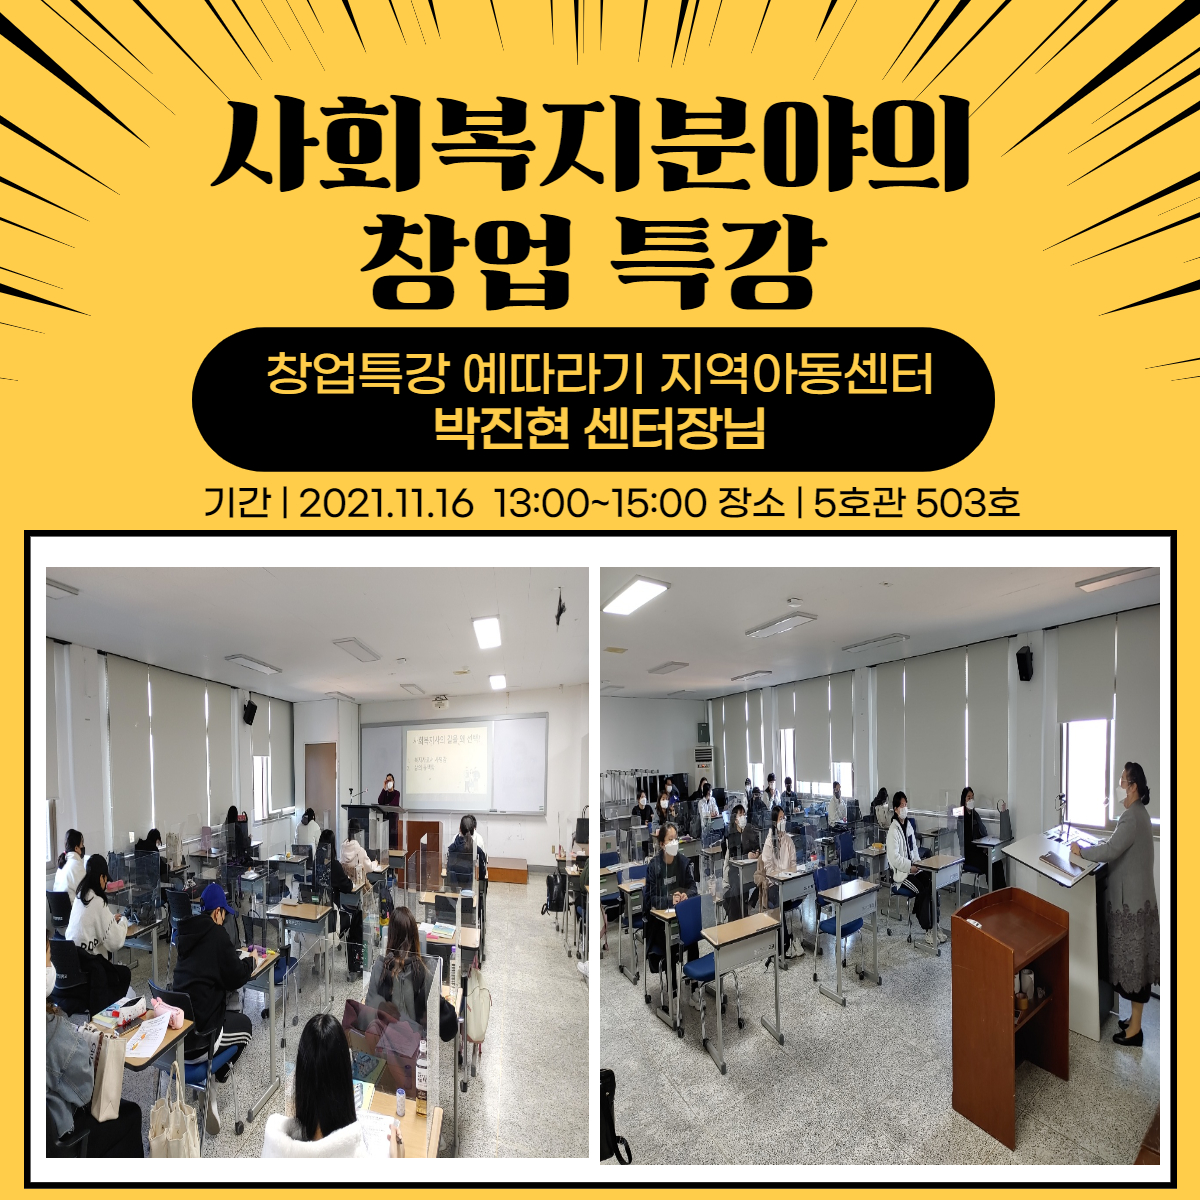 (11/16) 사회복지분야의 창업 특강 - 창업특강 예따라기 지역아동센터 박진현 센터장님